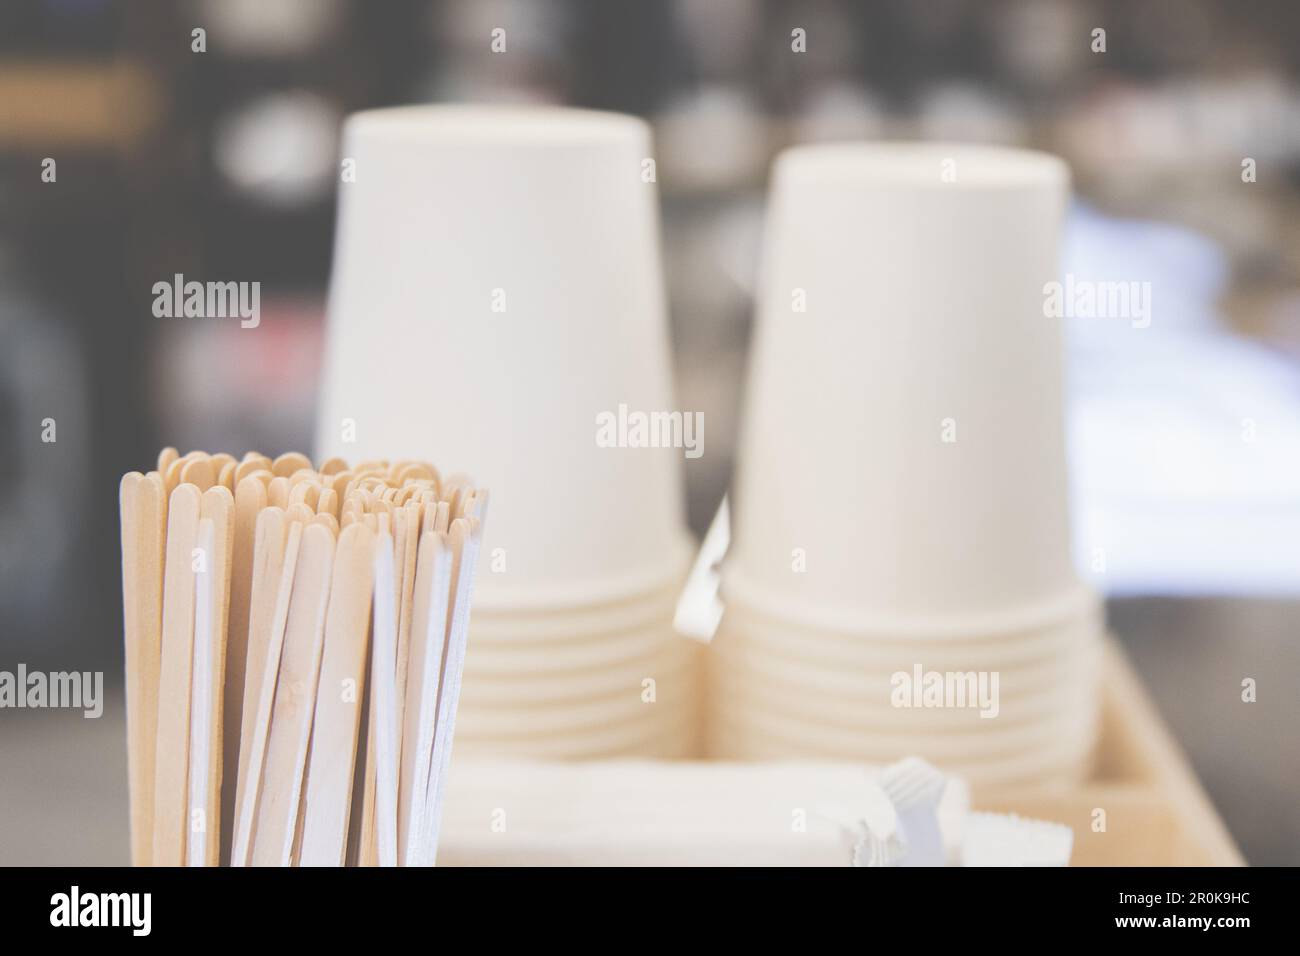 Hintergrund mit Pappbechern und Rührstäbchen neben einer Kaffeemaschine, gemütliche Atmosphäre eines Cafés Stockfoto